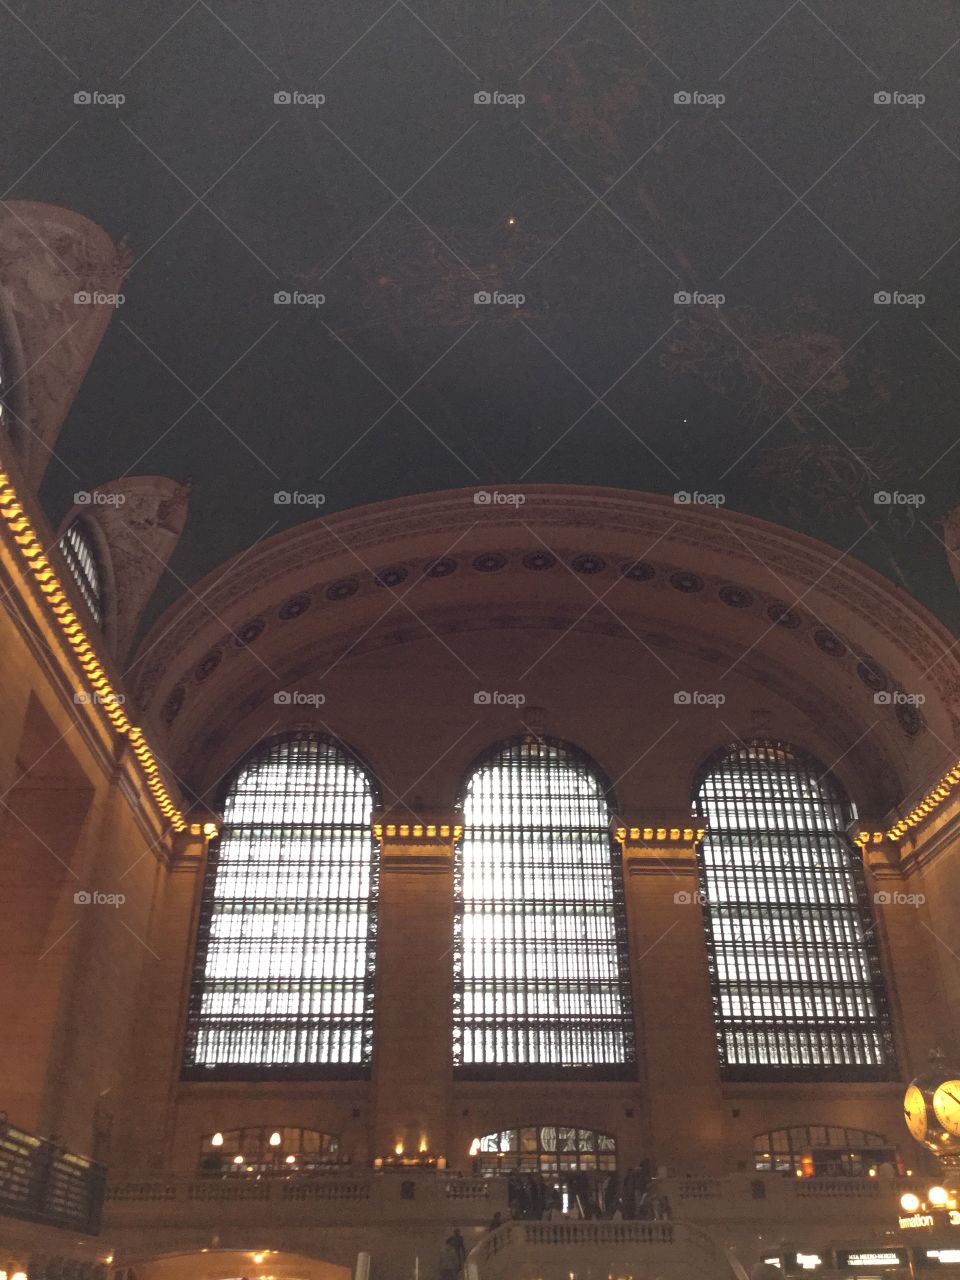 Grand Central. NY